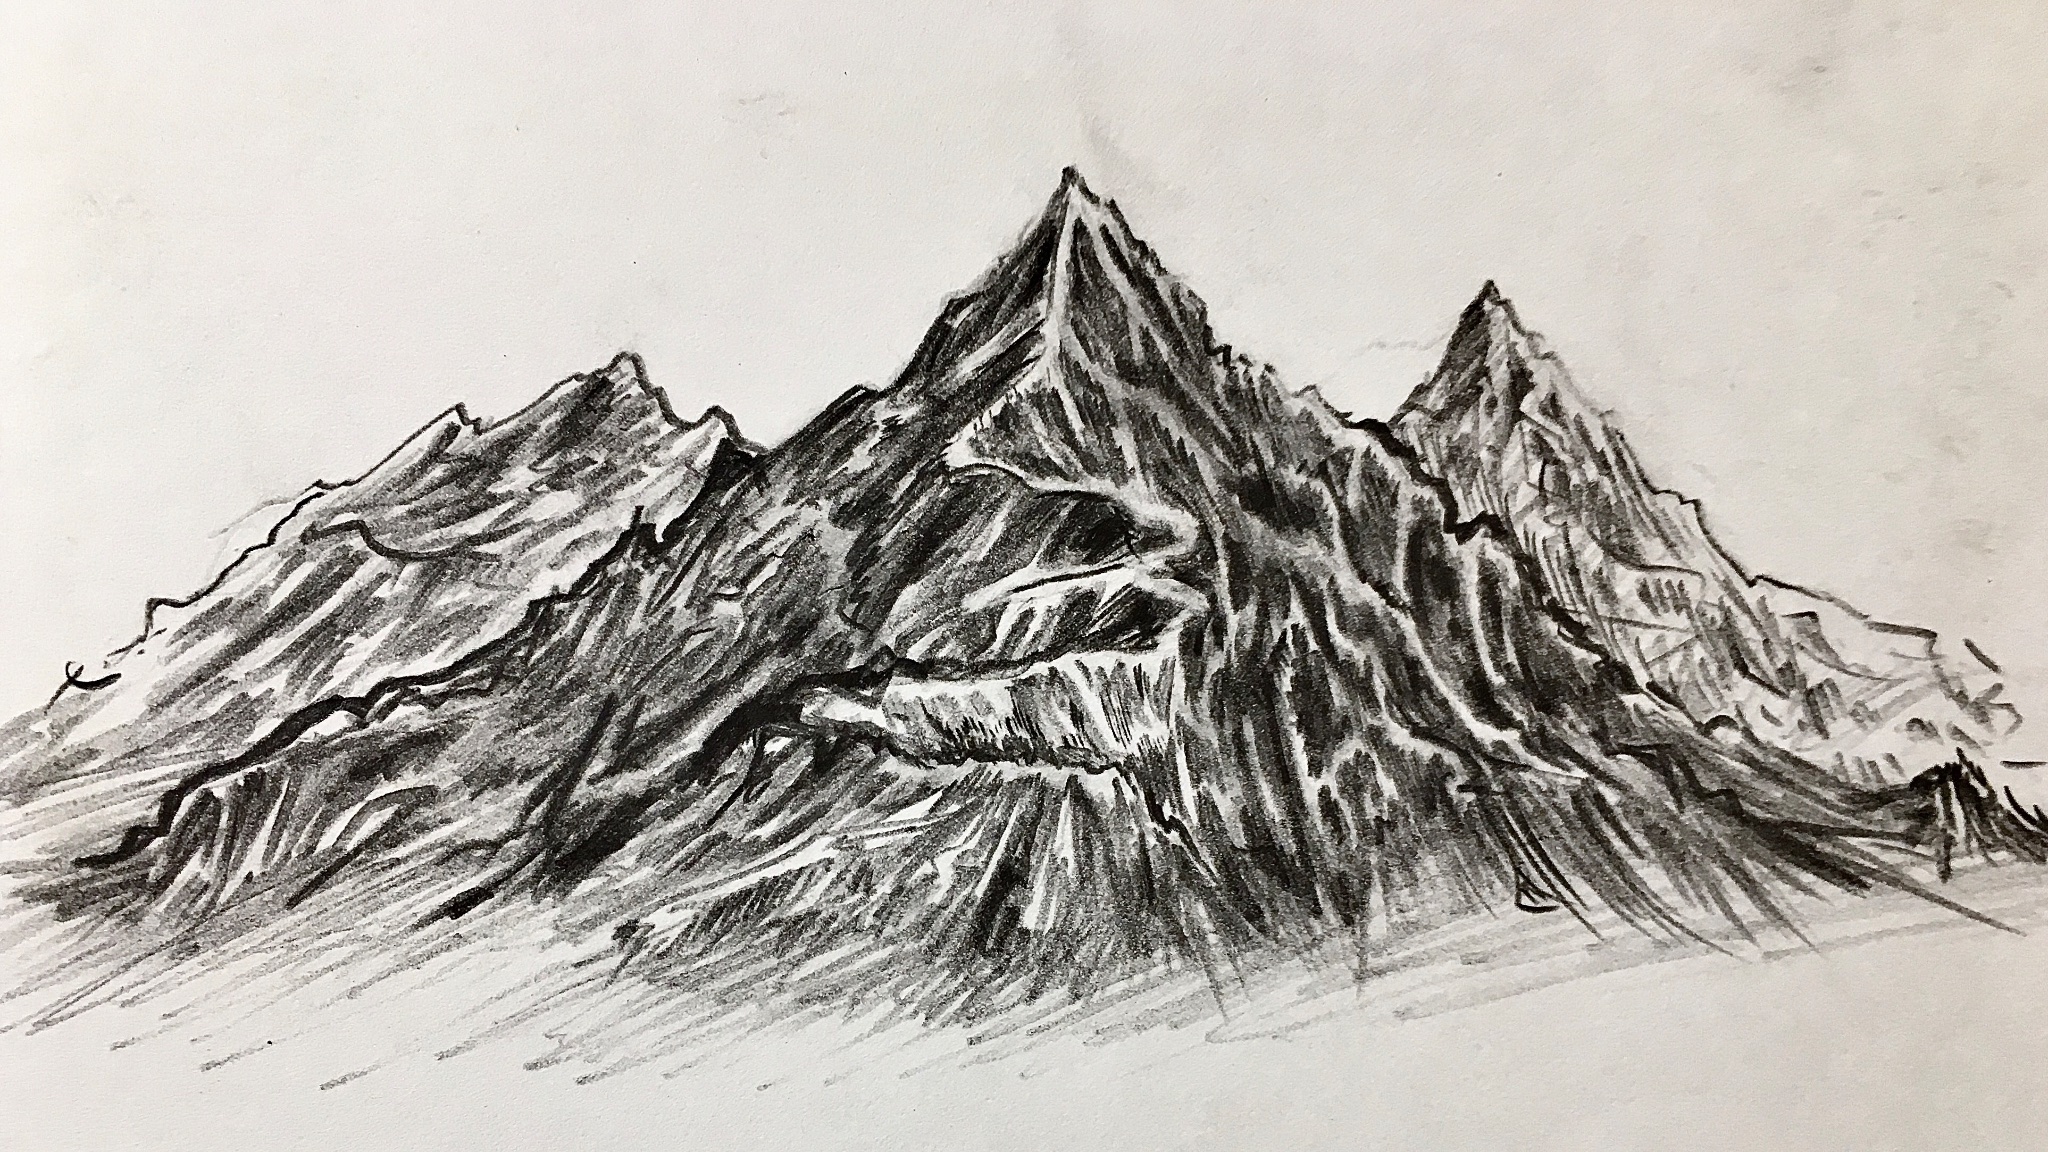 カムジｻﾝ 山 イラスト イラスト好きと繋がりたい 何かそれっぽい山描いてみた T Co Yhjdly84ct Twitter